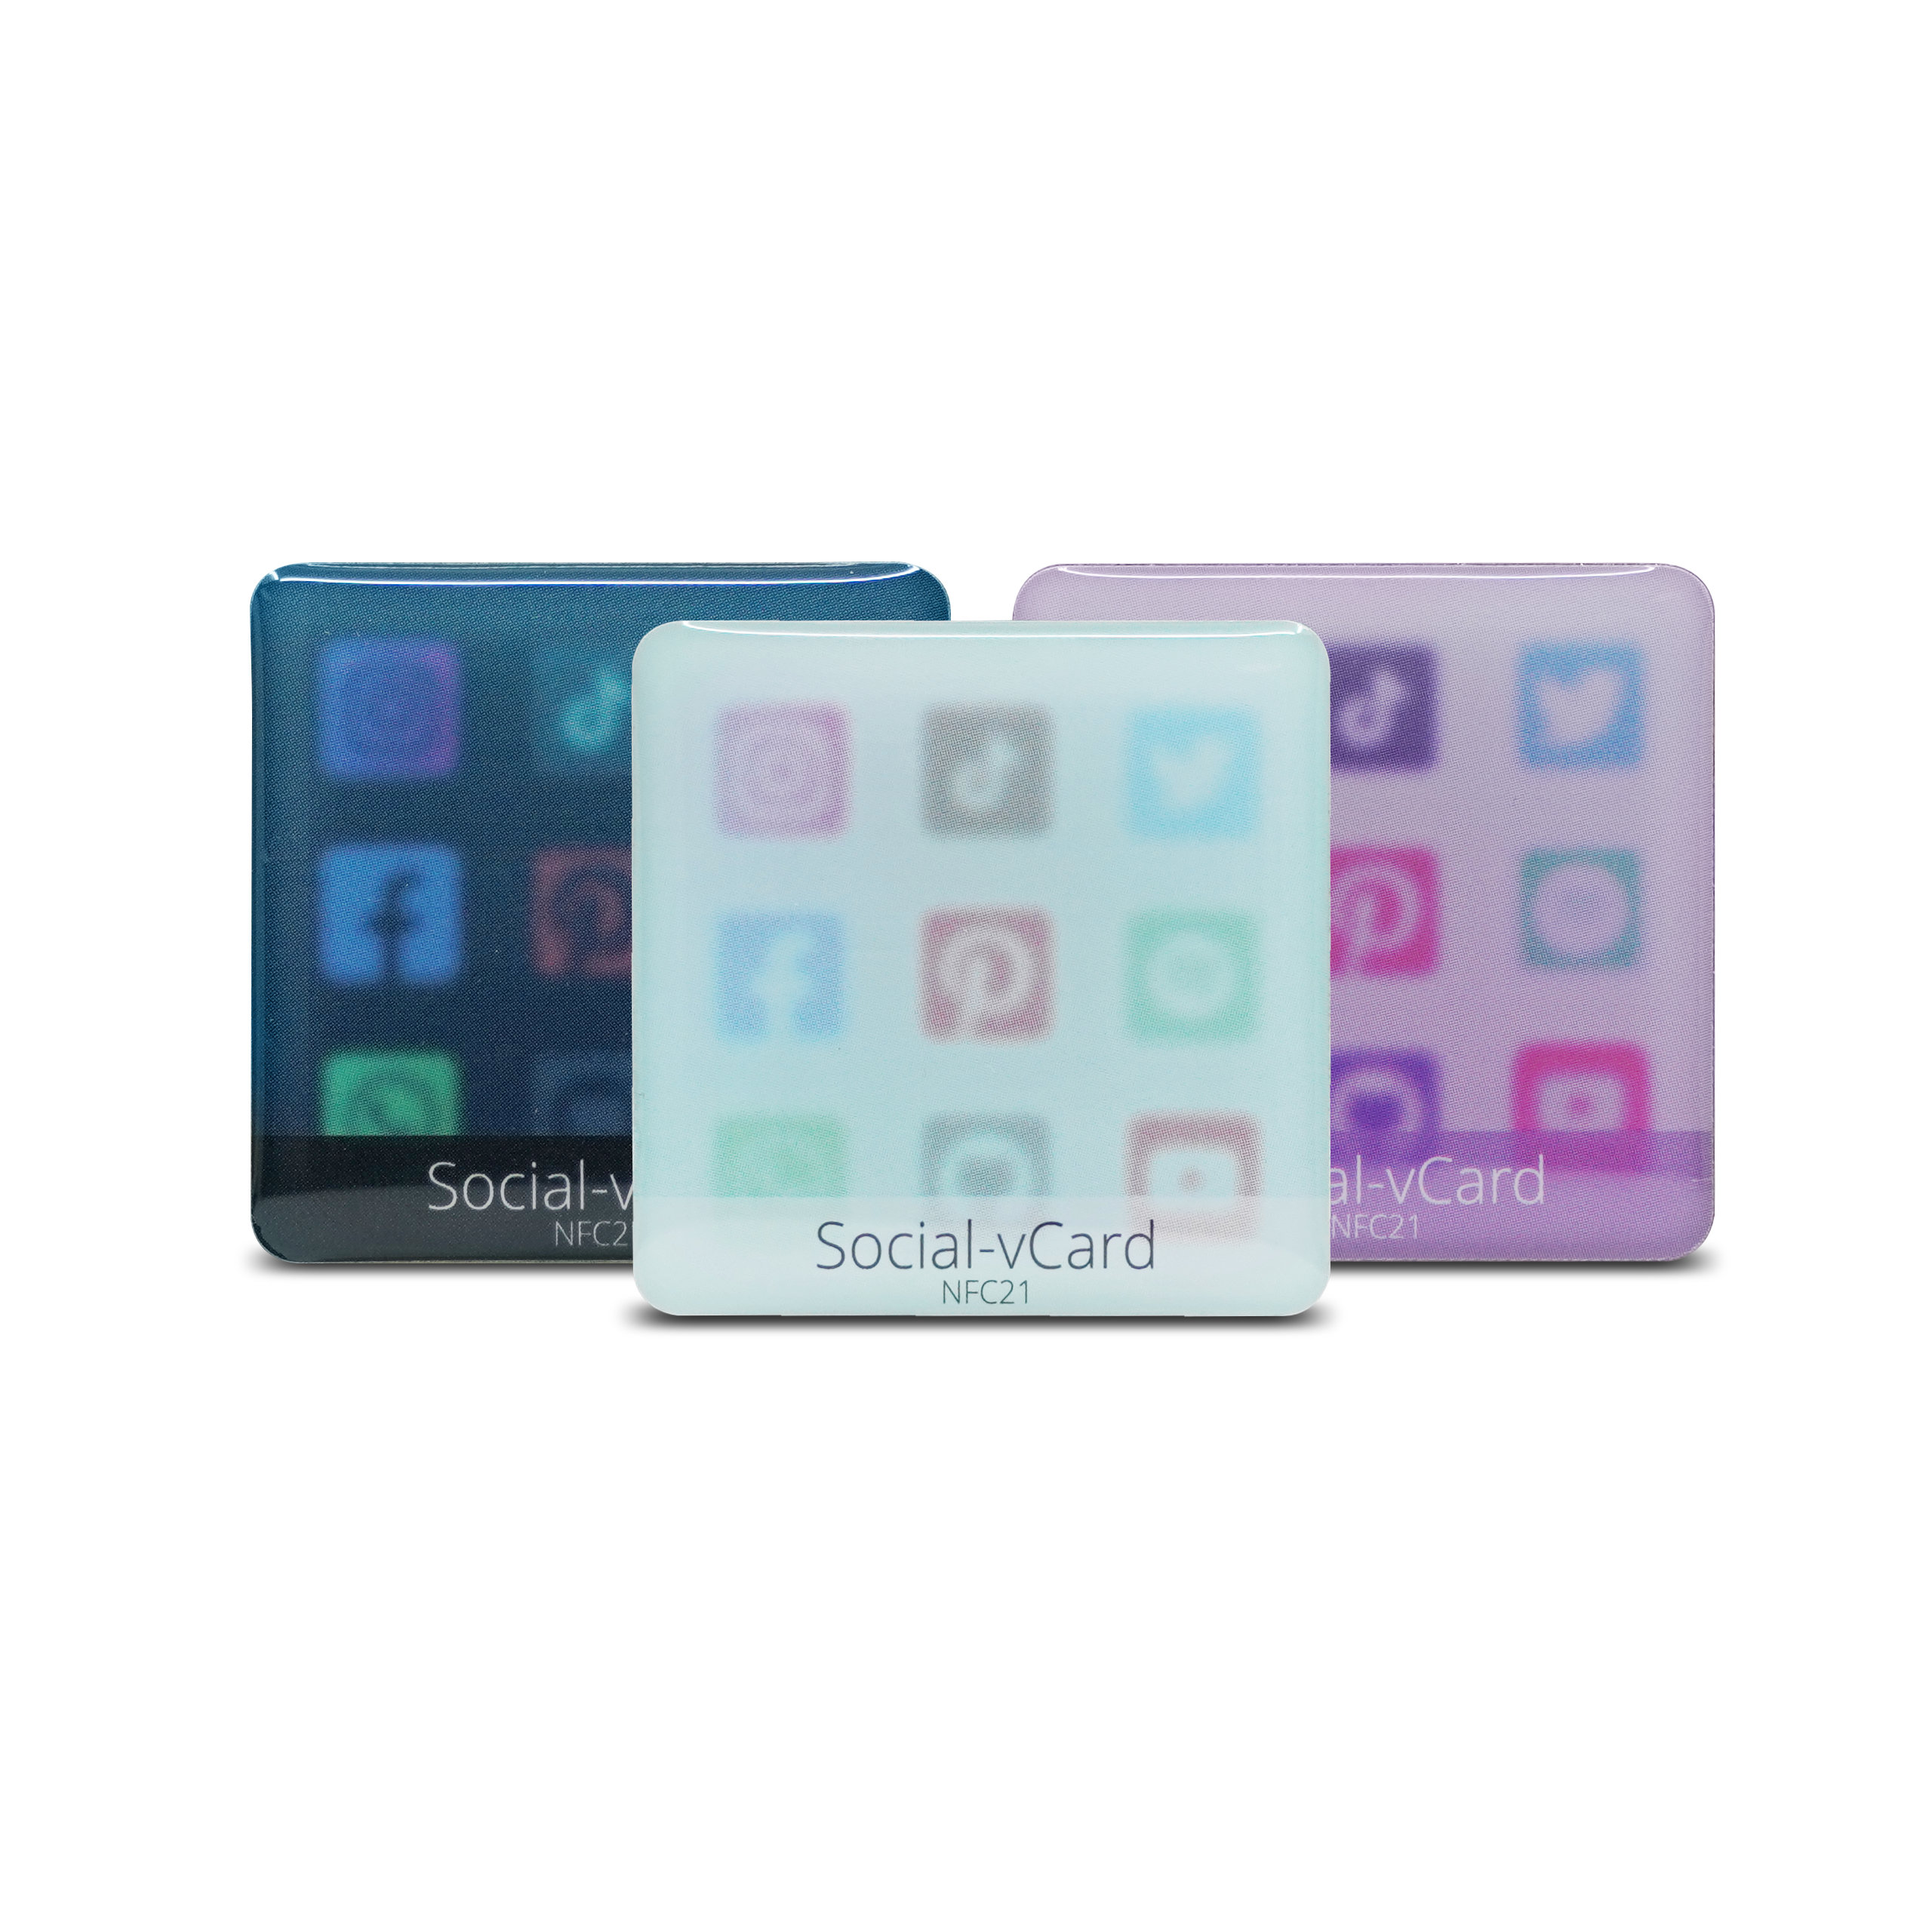 Social-vCard Light - Digitaler Social Media Sticker - PET  - 35 x 35 mm - hellblau